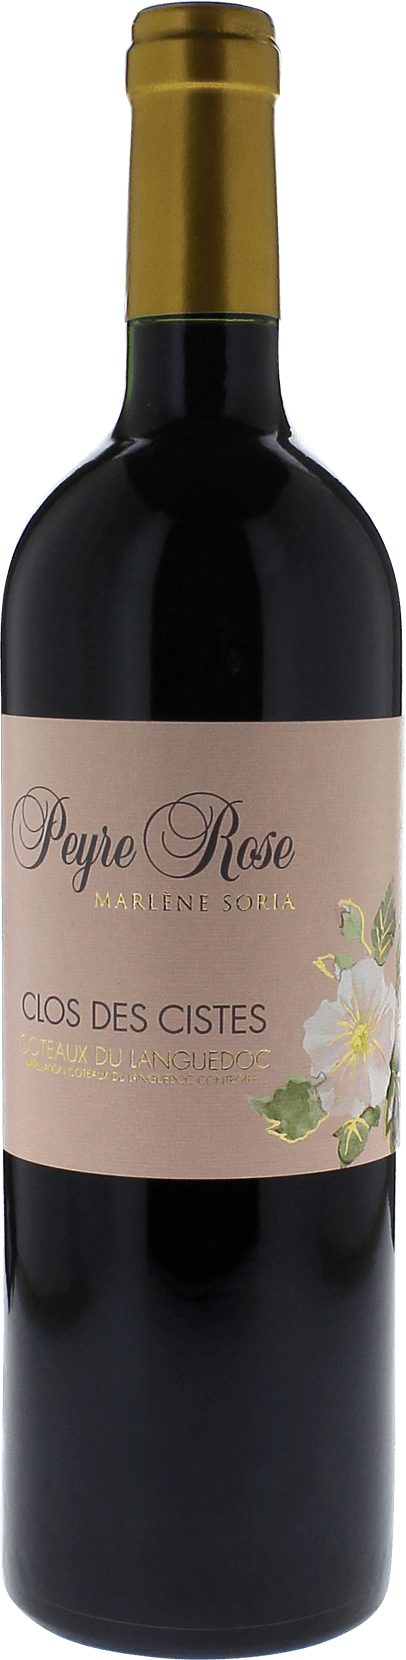 Peyre rose clos des cistes 2004  Vin de France, Languedoc